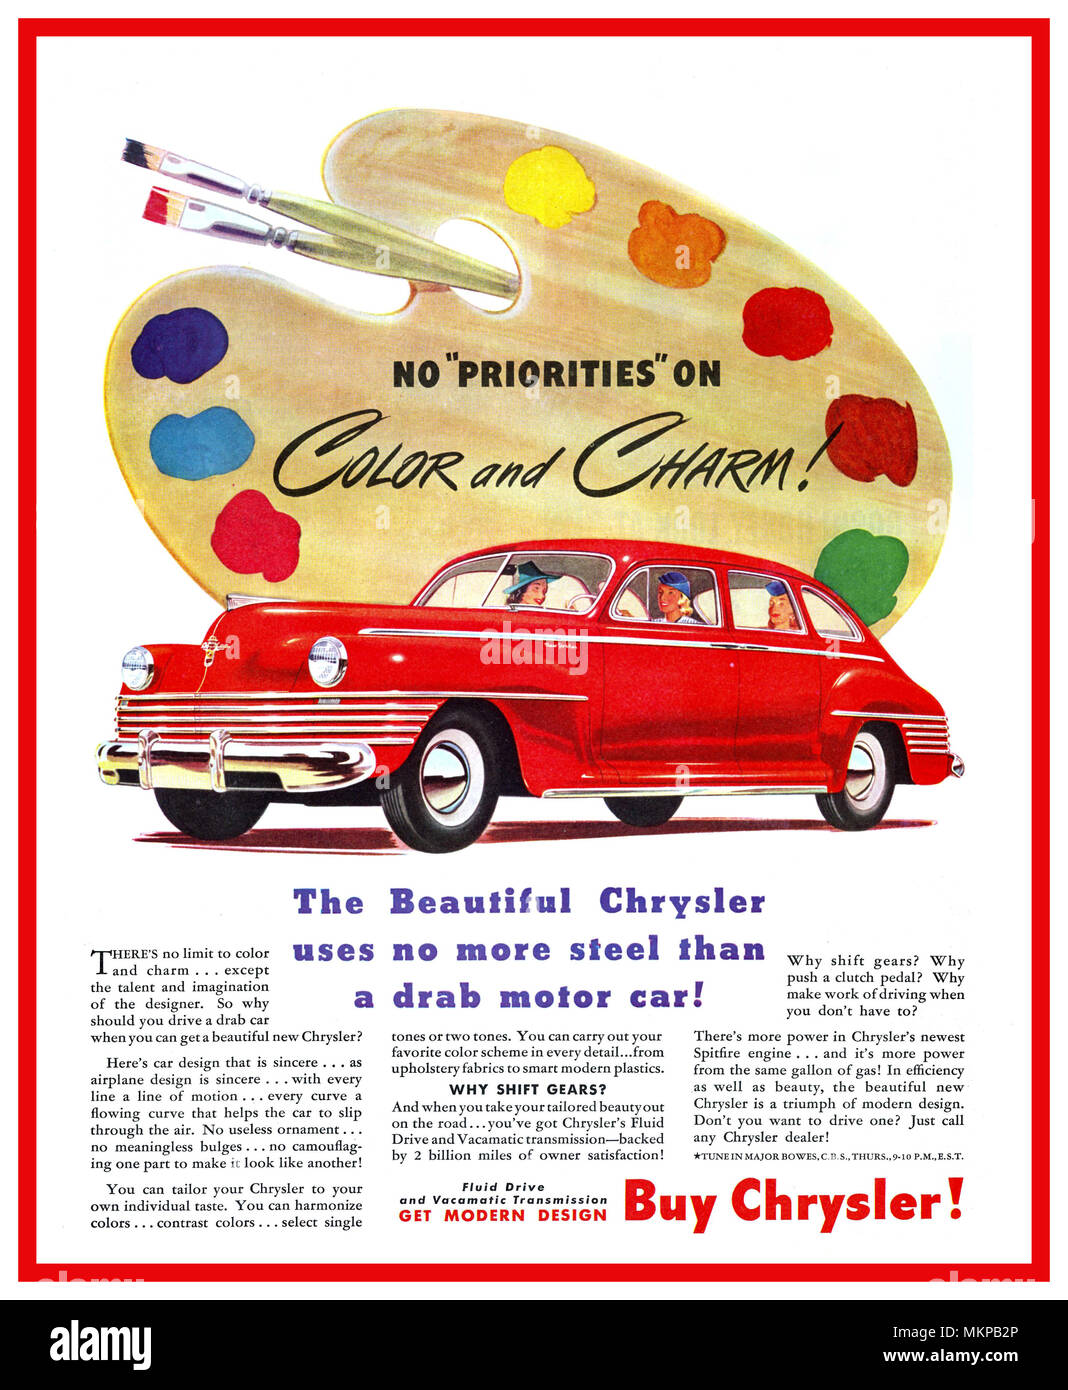 40er Vintage American Car hergestellt während des zweiten Weltkriegs den 1942 Chrysler New Yorker Sedan" keine Prioritäten auf Farbe und Charme" KAUFEN CHRYSLER' die schönen Chrysler nicht mehr Stahl verwendet, als einem tristen Motorcar" Stockfoto